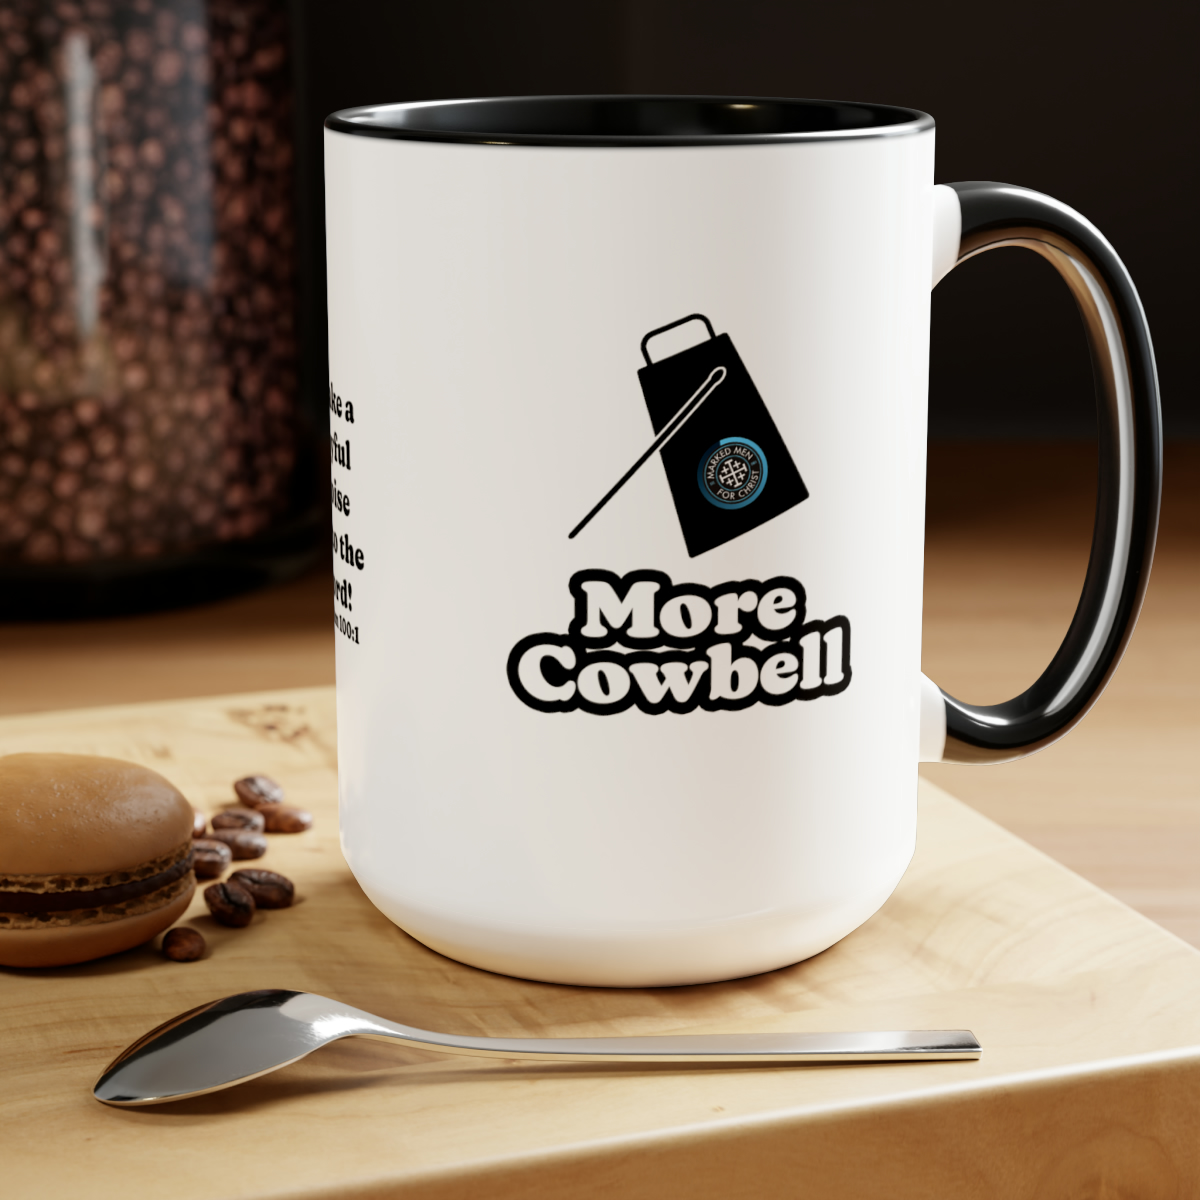 More Cowbell” Mug, 15oz – Marked Men For Christ